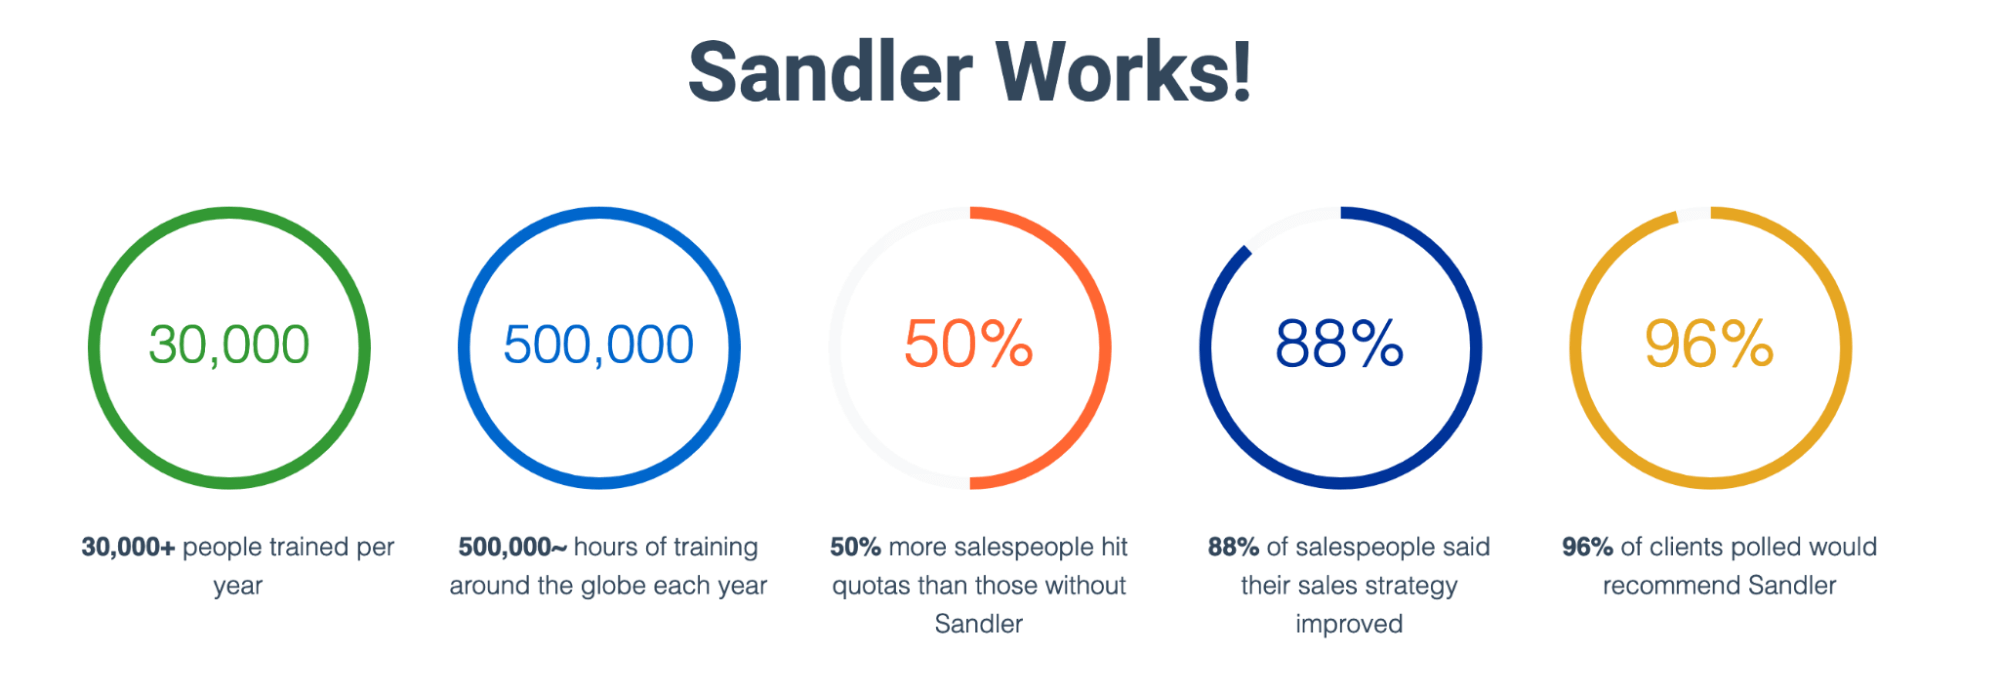 Statistics for Sandler selling training